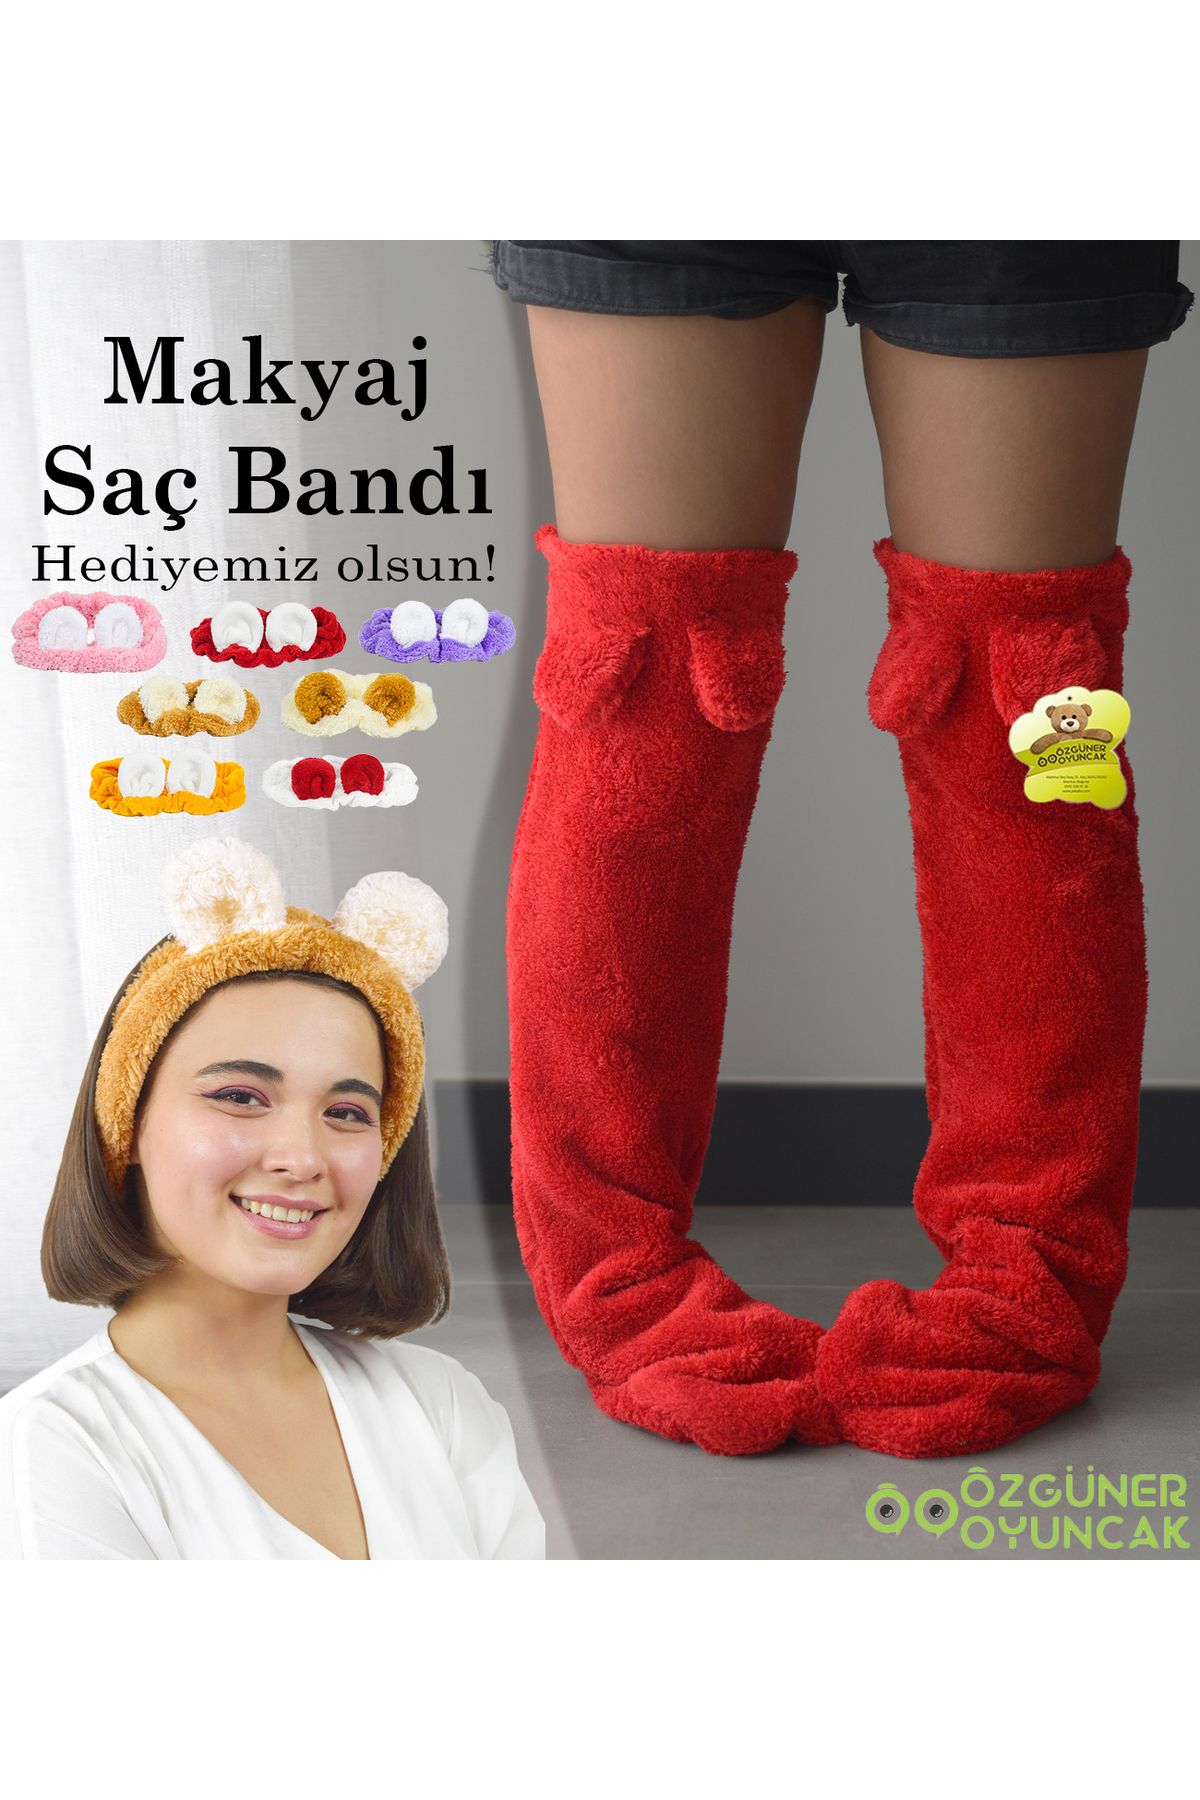 Pandamkee Kulaklı Peluş Çorab Welsoft Diz Üstü Oda Çorabı Kışlık Uyku Çorabı Ayak Isıtıcı Uzun Çorap